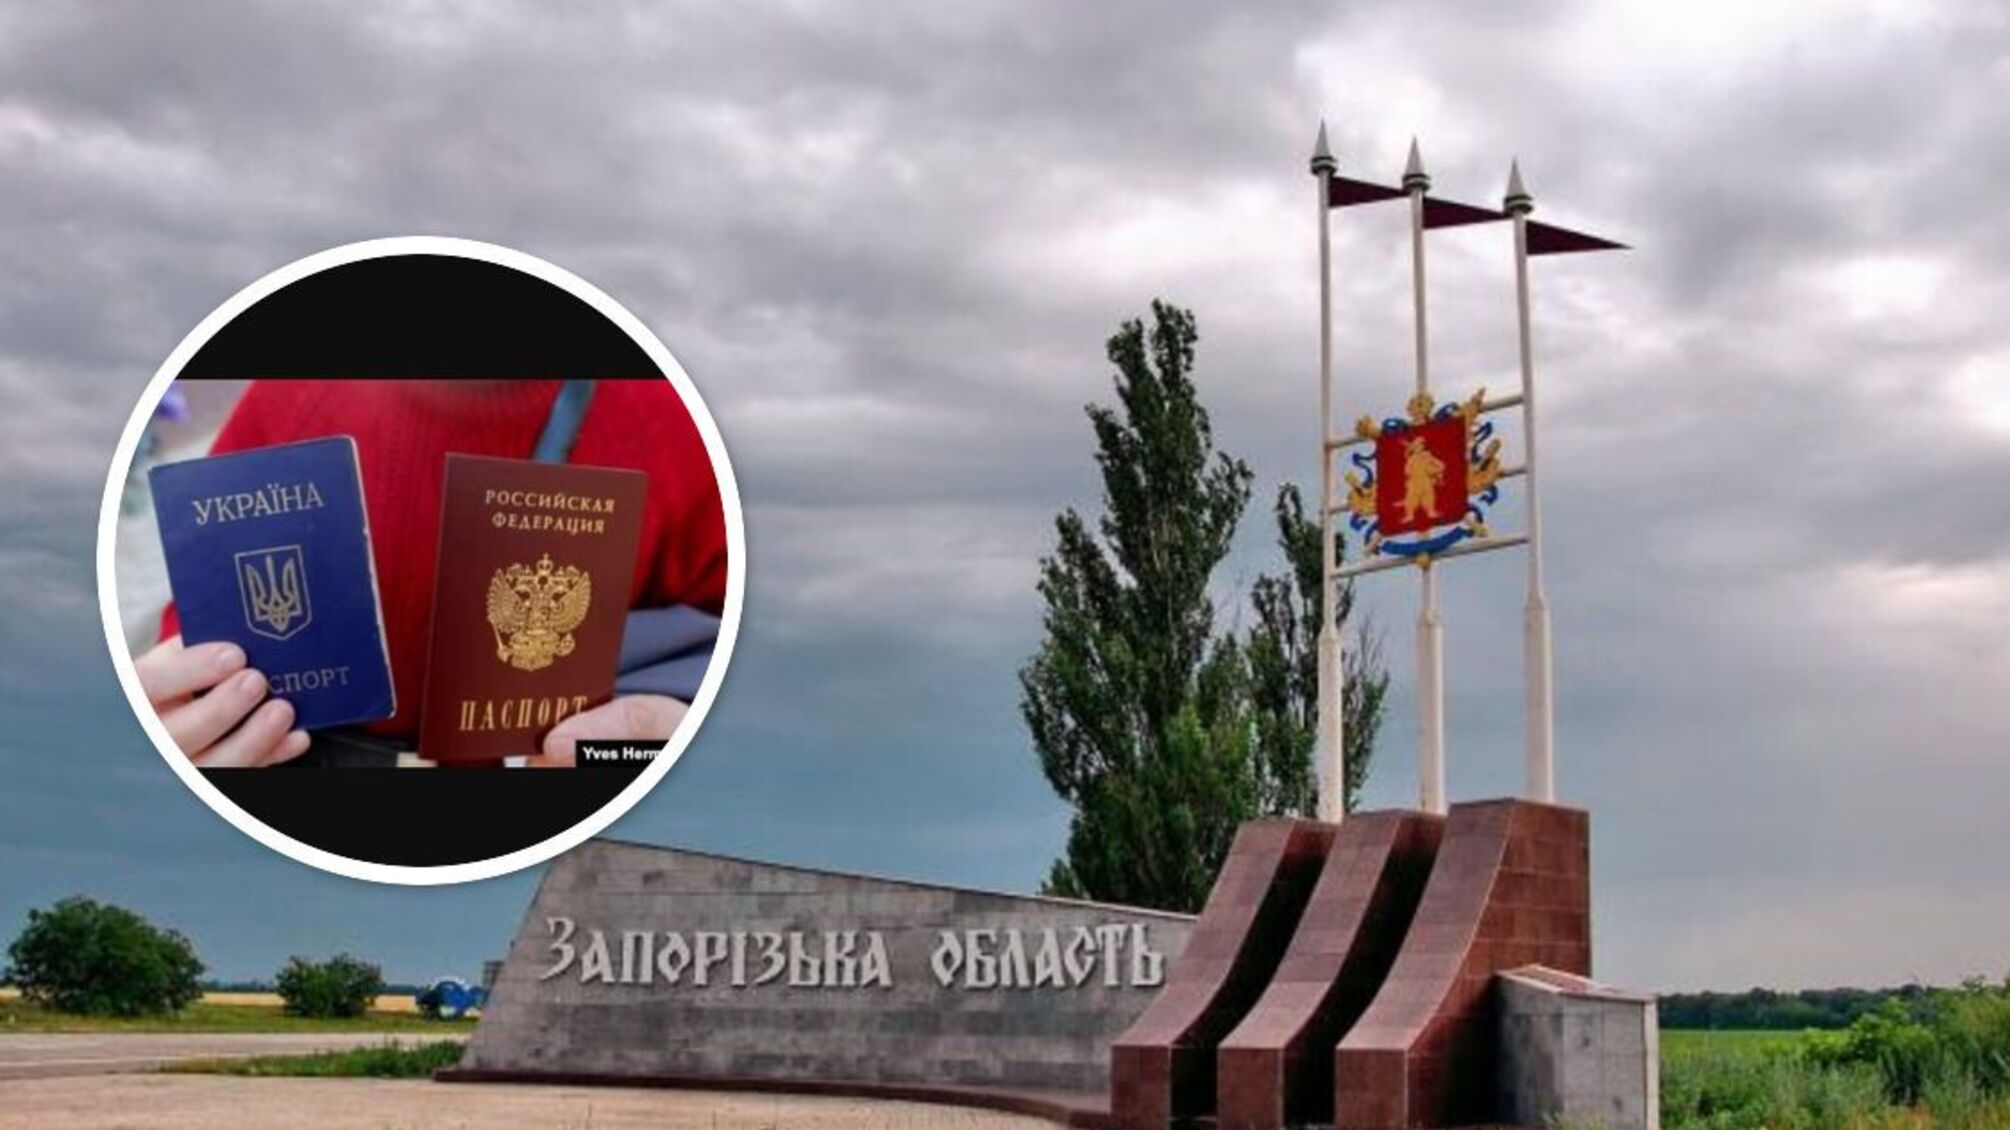  Енергодар стає більш закритим, туди не впускають без паспорта рф і перевірок, — голова Василівської РВА